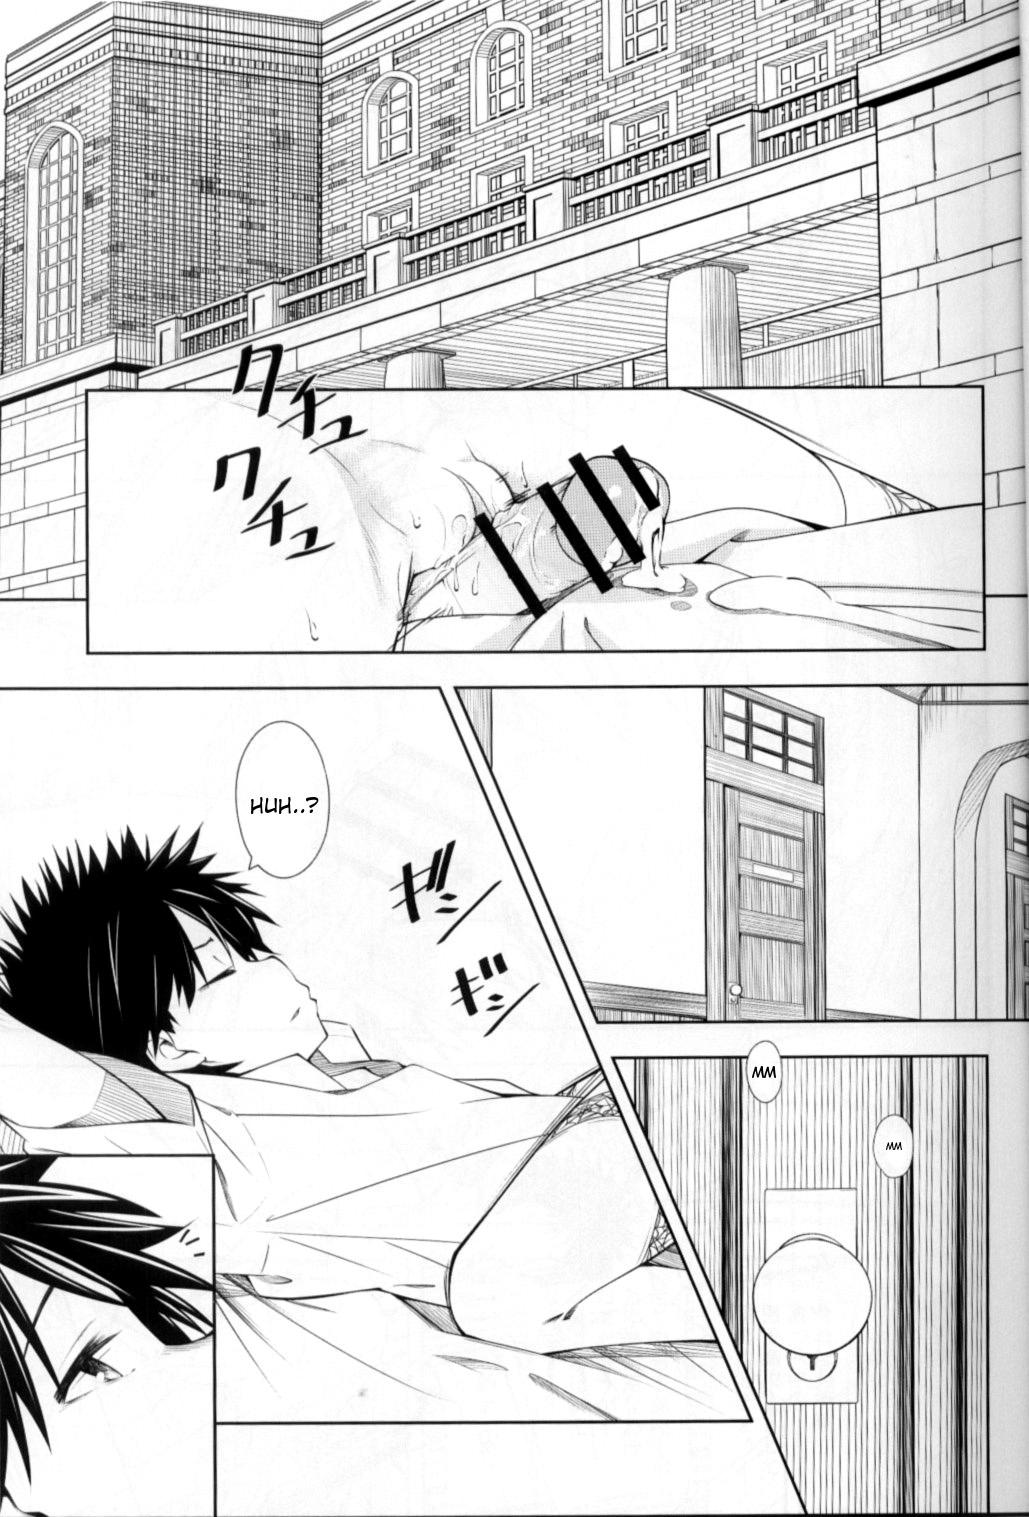 Suck Shokuhou-san no 5x0 - Toaru kagaku no railgun Namorada - Page 4